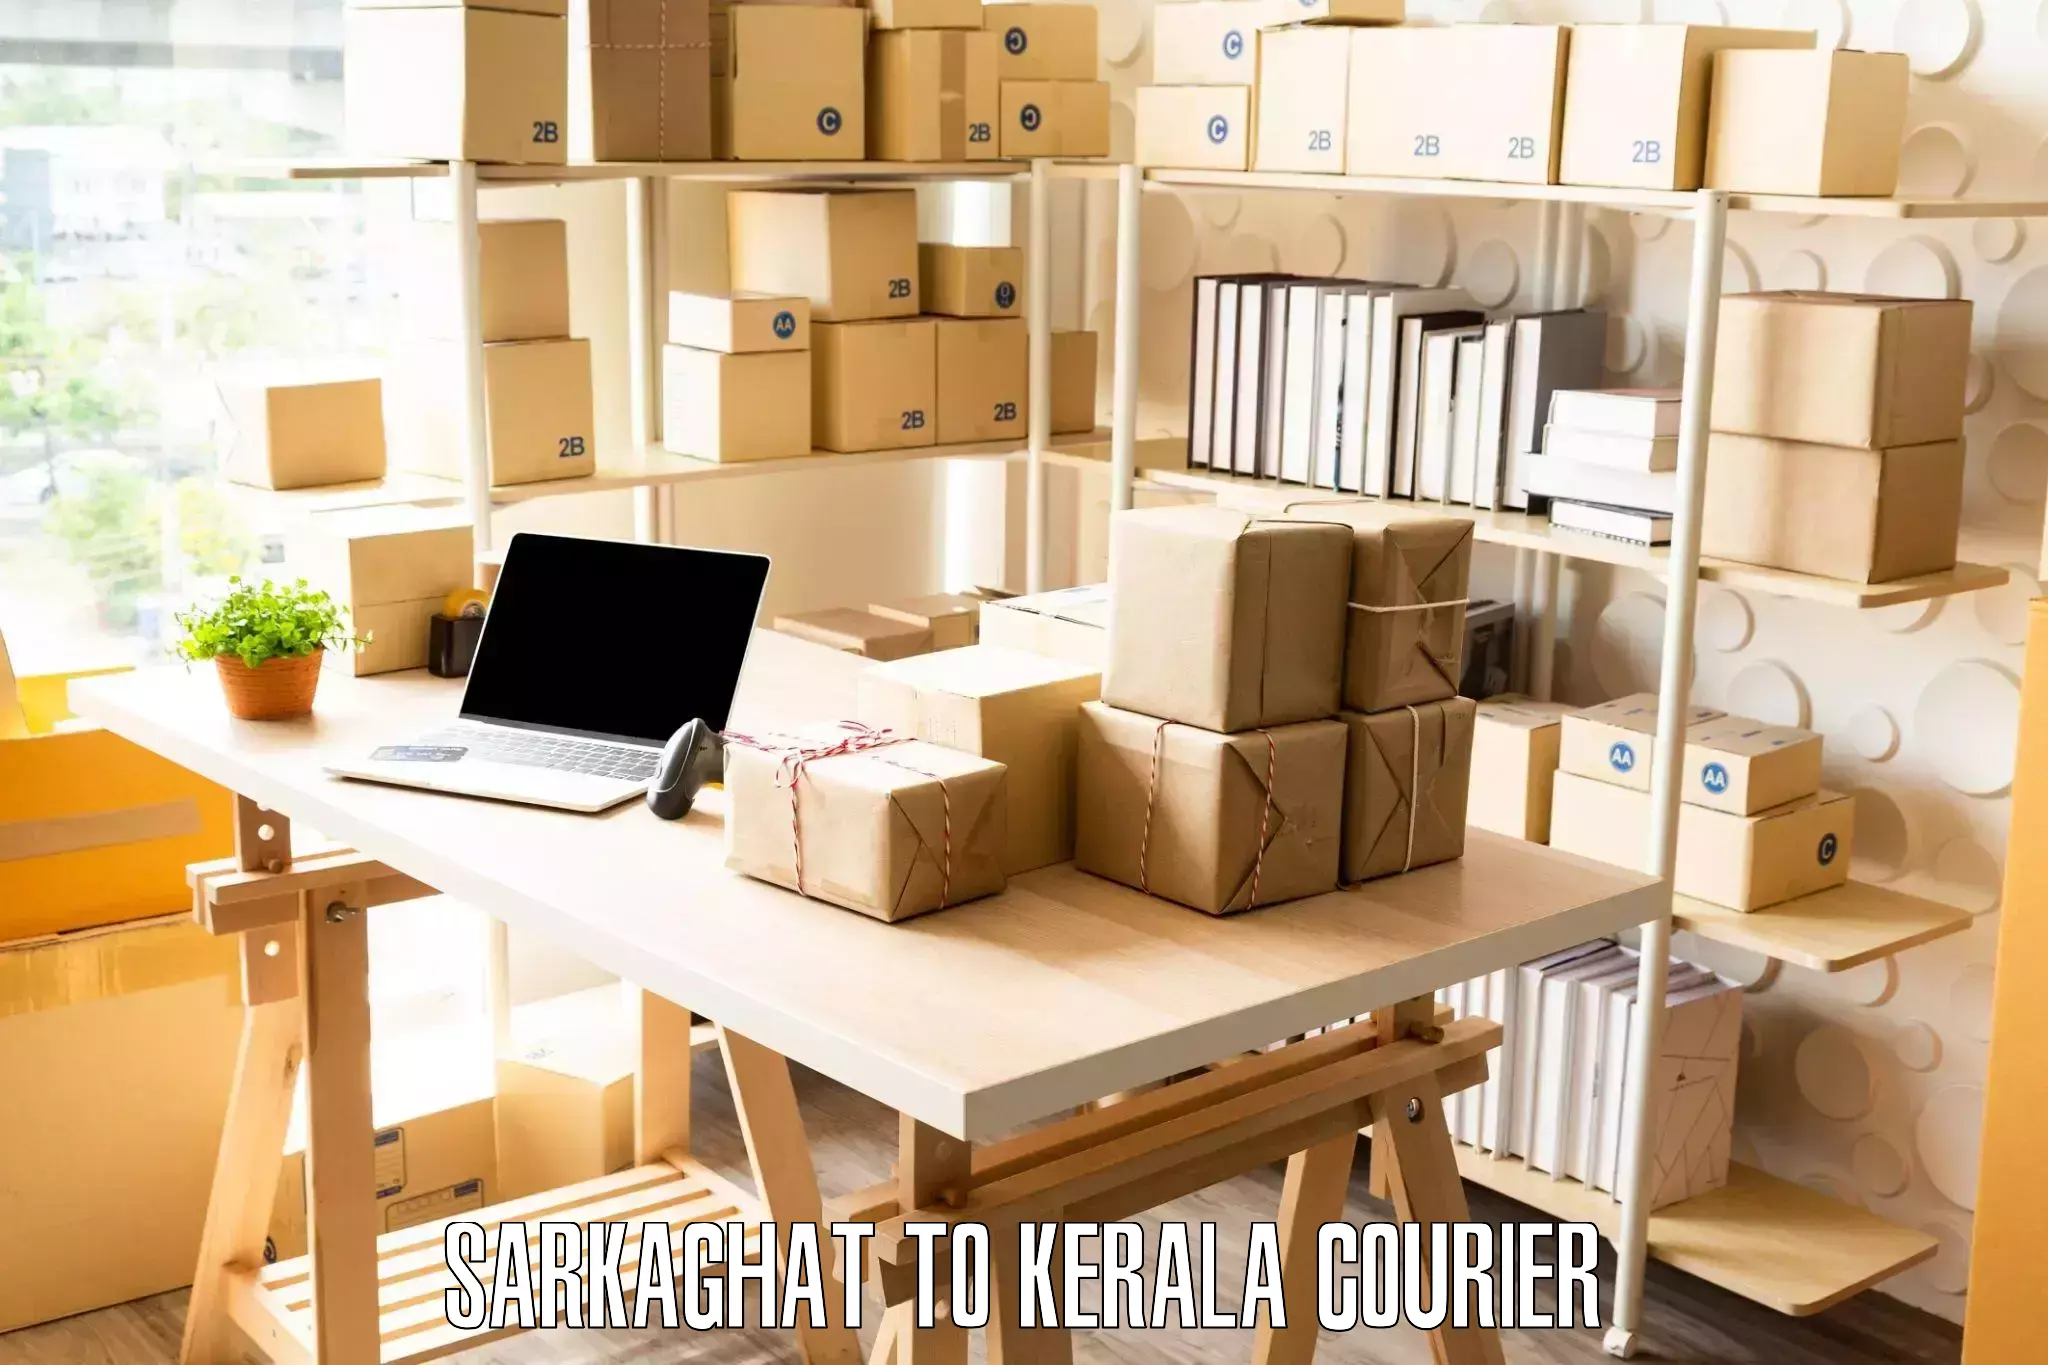 Furniture transport services Sarkaghat to Mundakayam